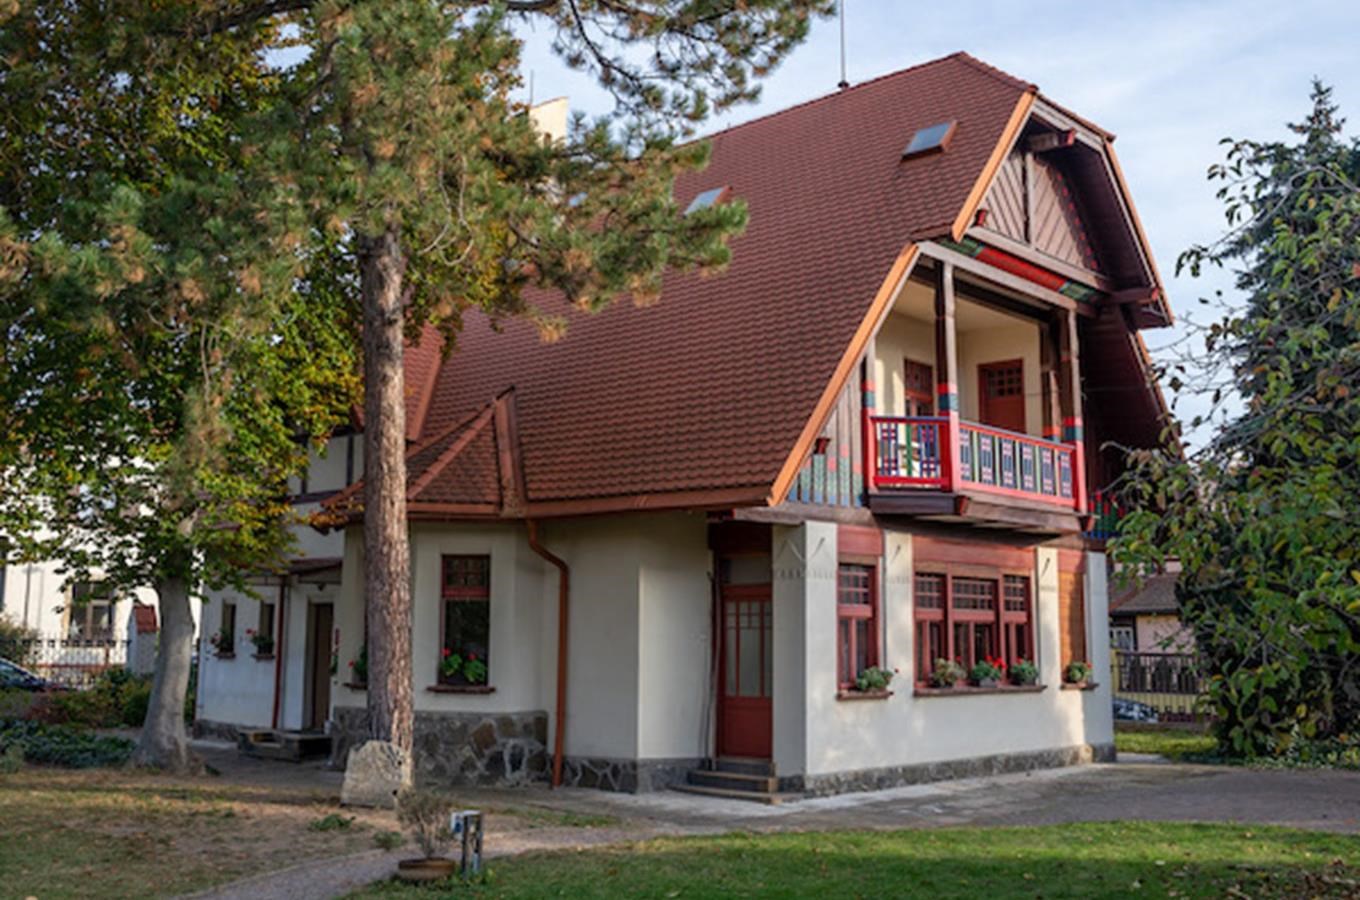 Trmalova vila v pražských Strašnicích - centrum architektury rodinného bydlení